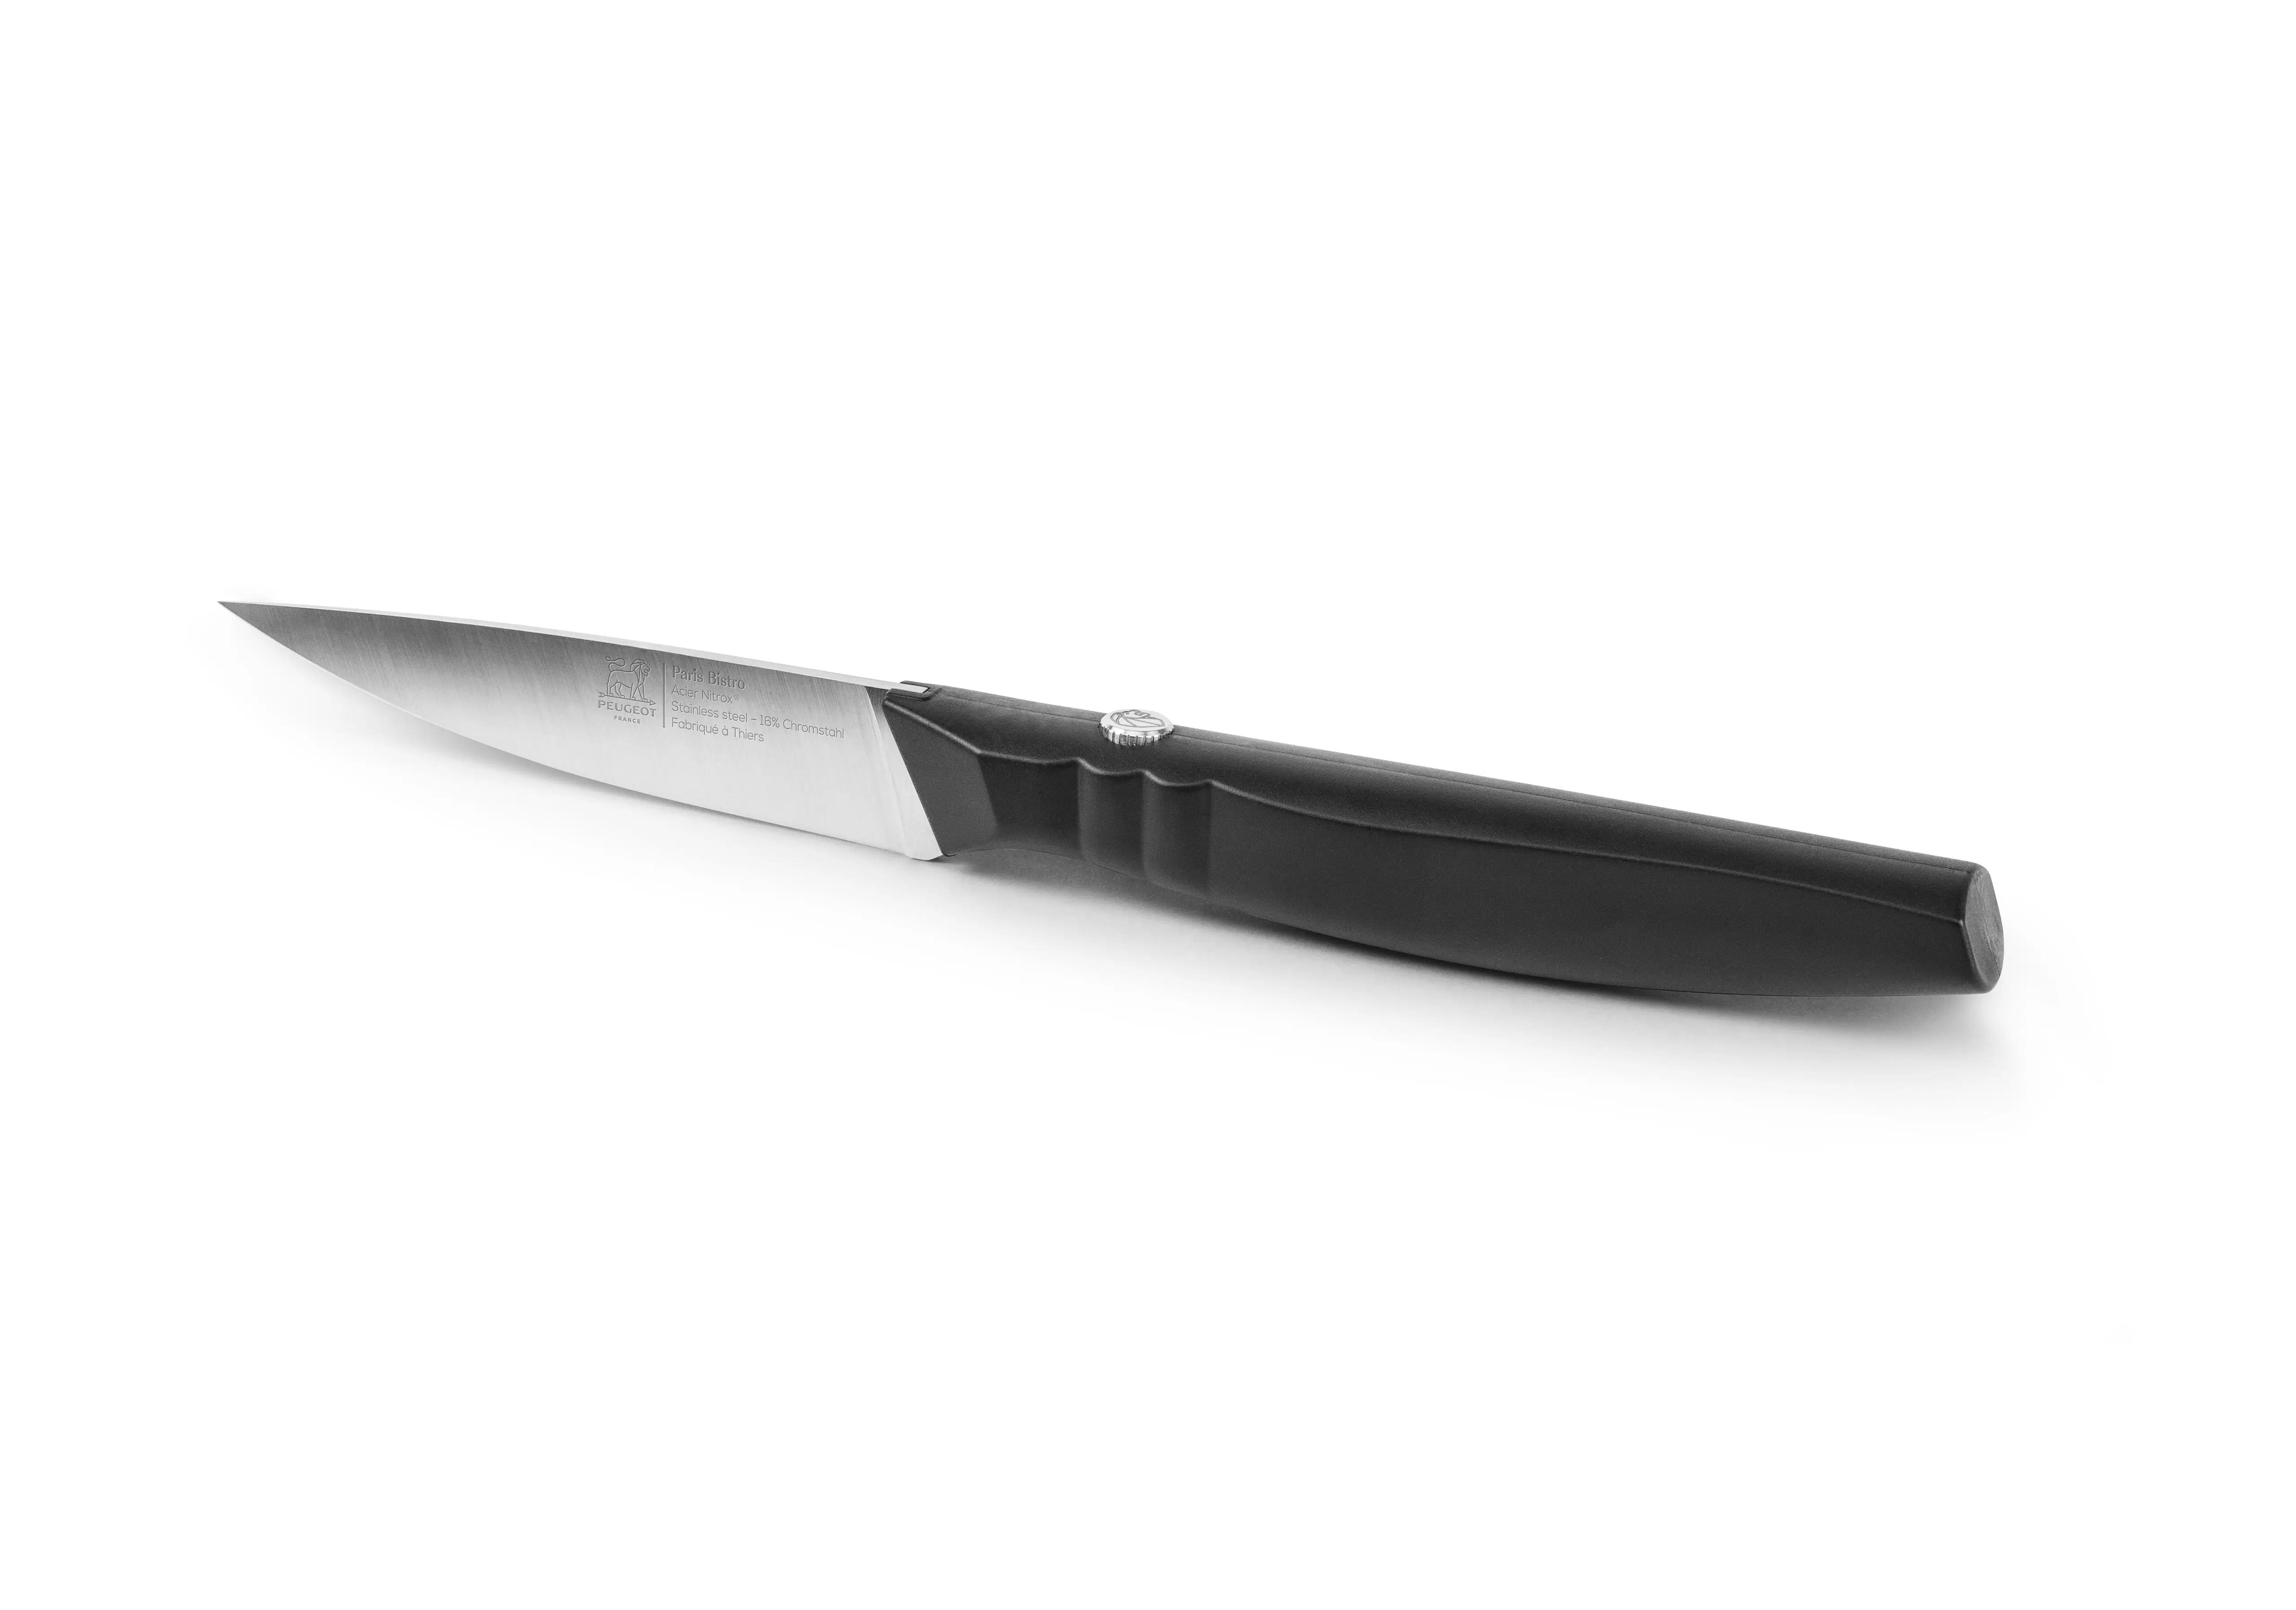 Нож для овощей Paris Bistro Peugeot 9 см